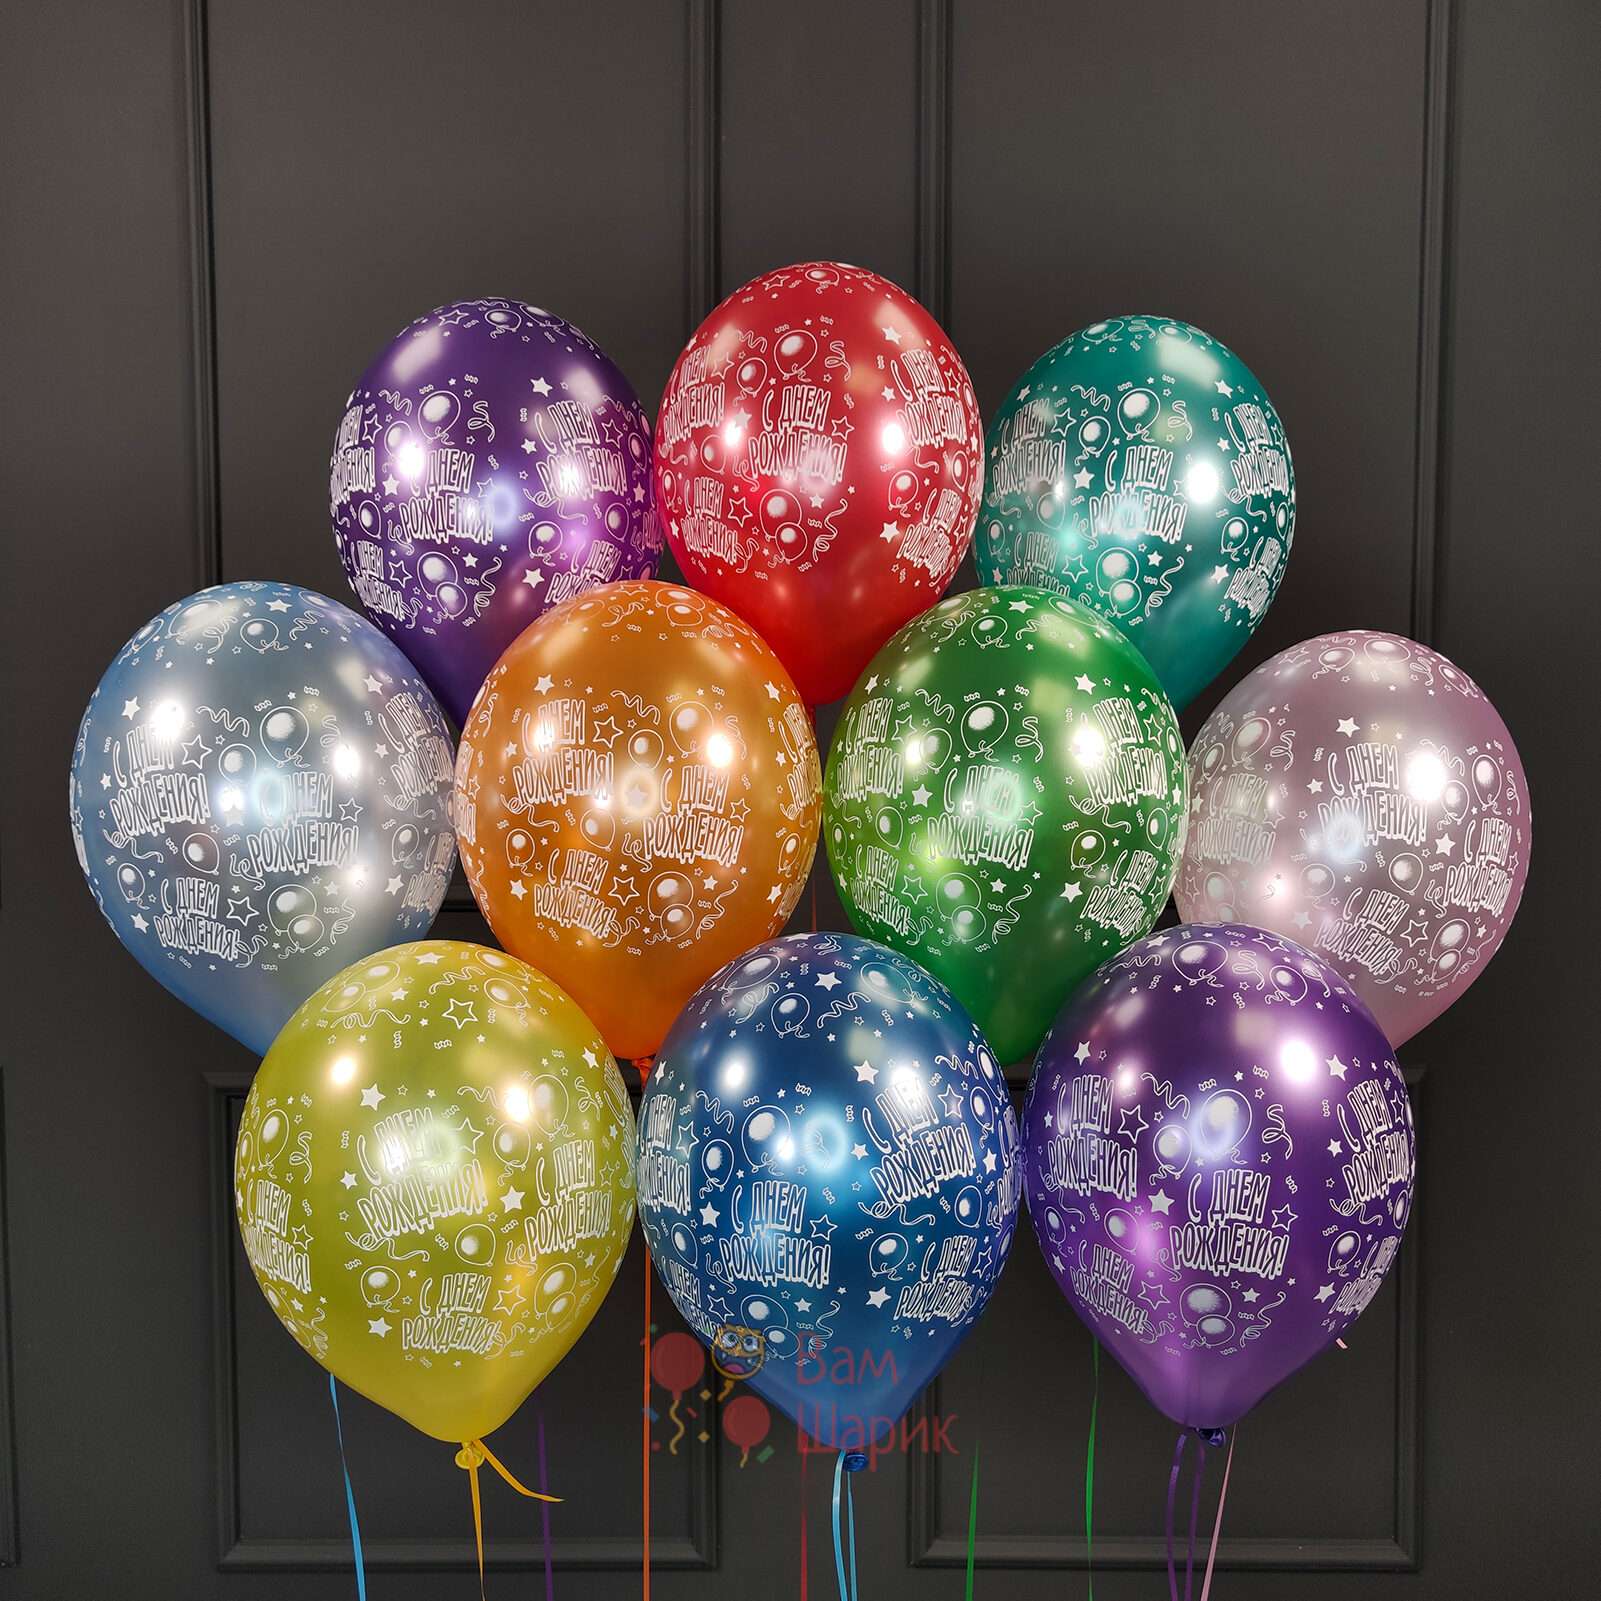 Купить шары на день рождения в Москве с доставкой недорого | Balloonland